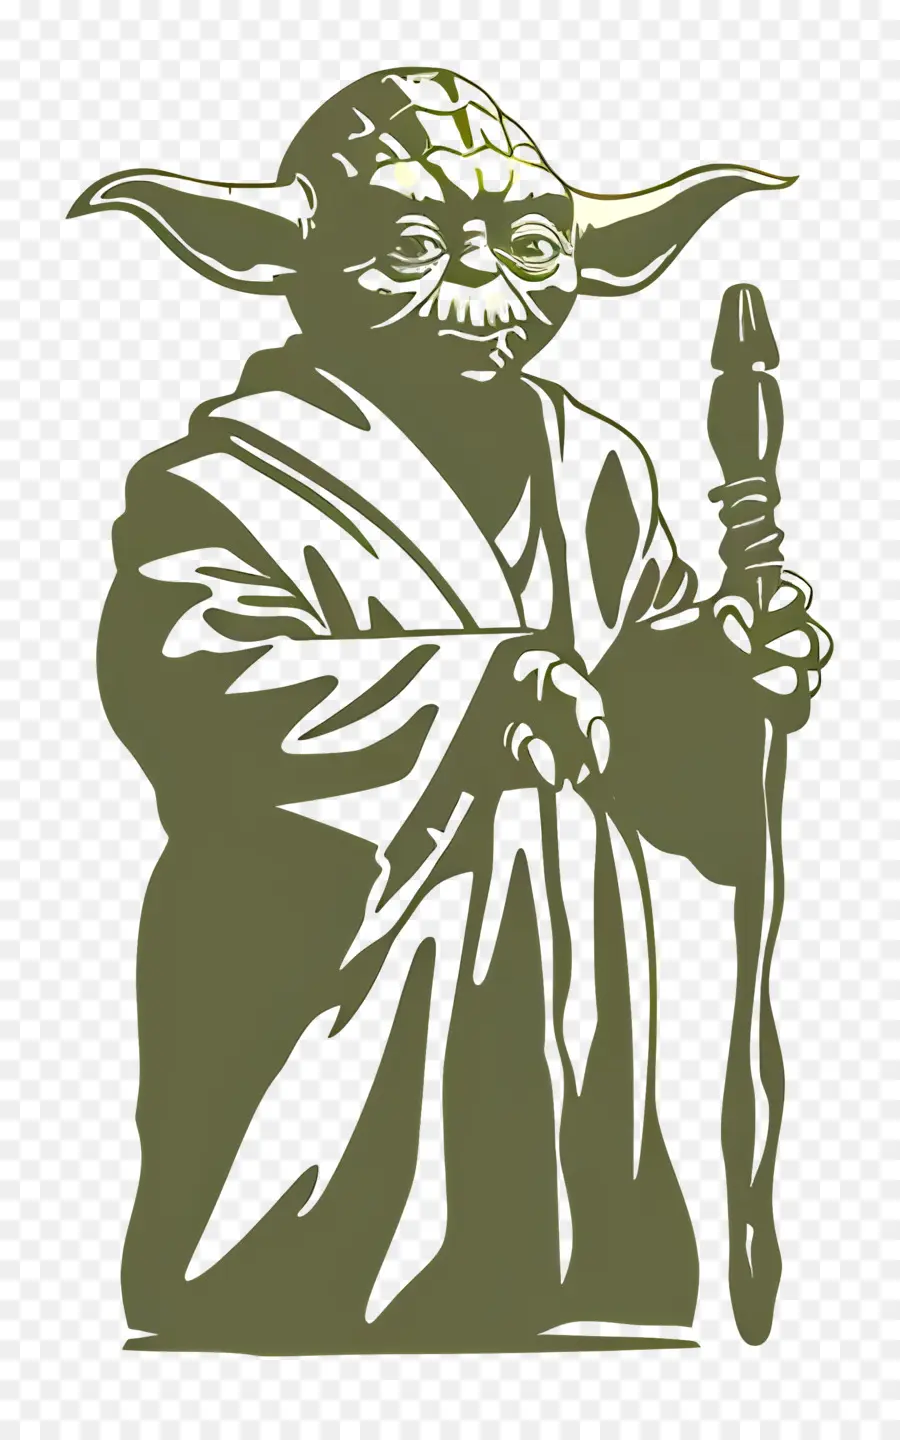 chiến tranh giữa các vì sao - Hình tượng Yoda màu xanh lá cây với mía